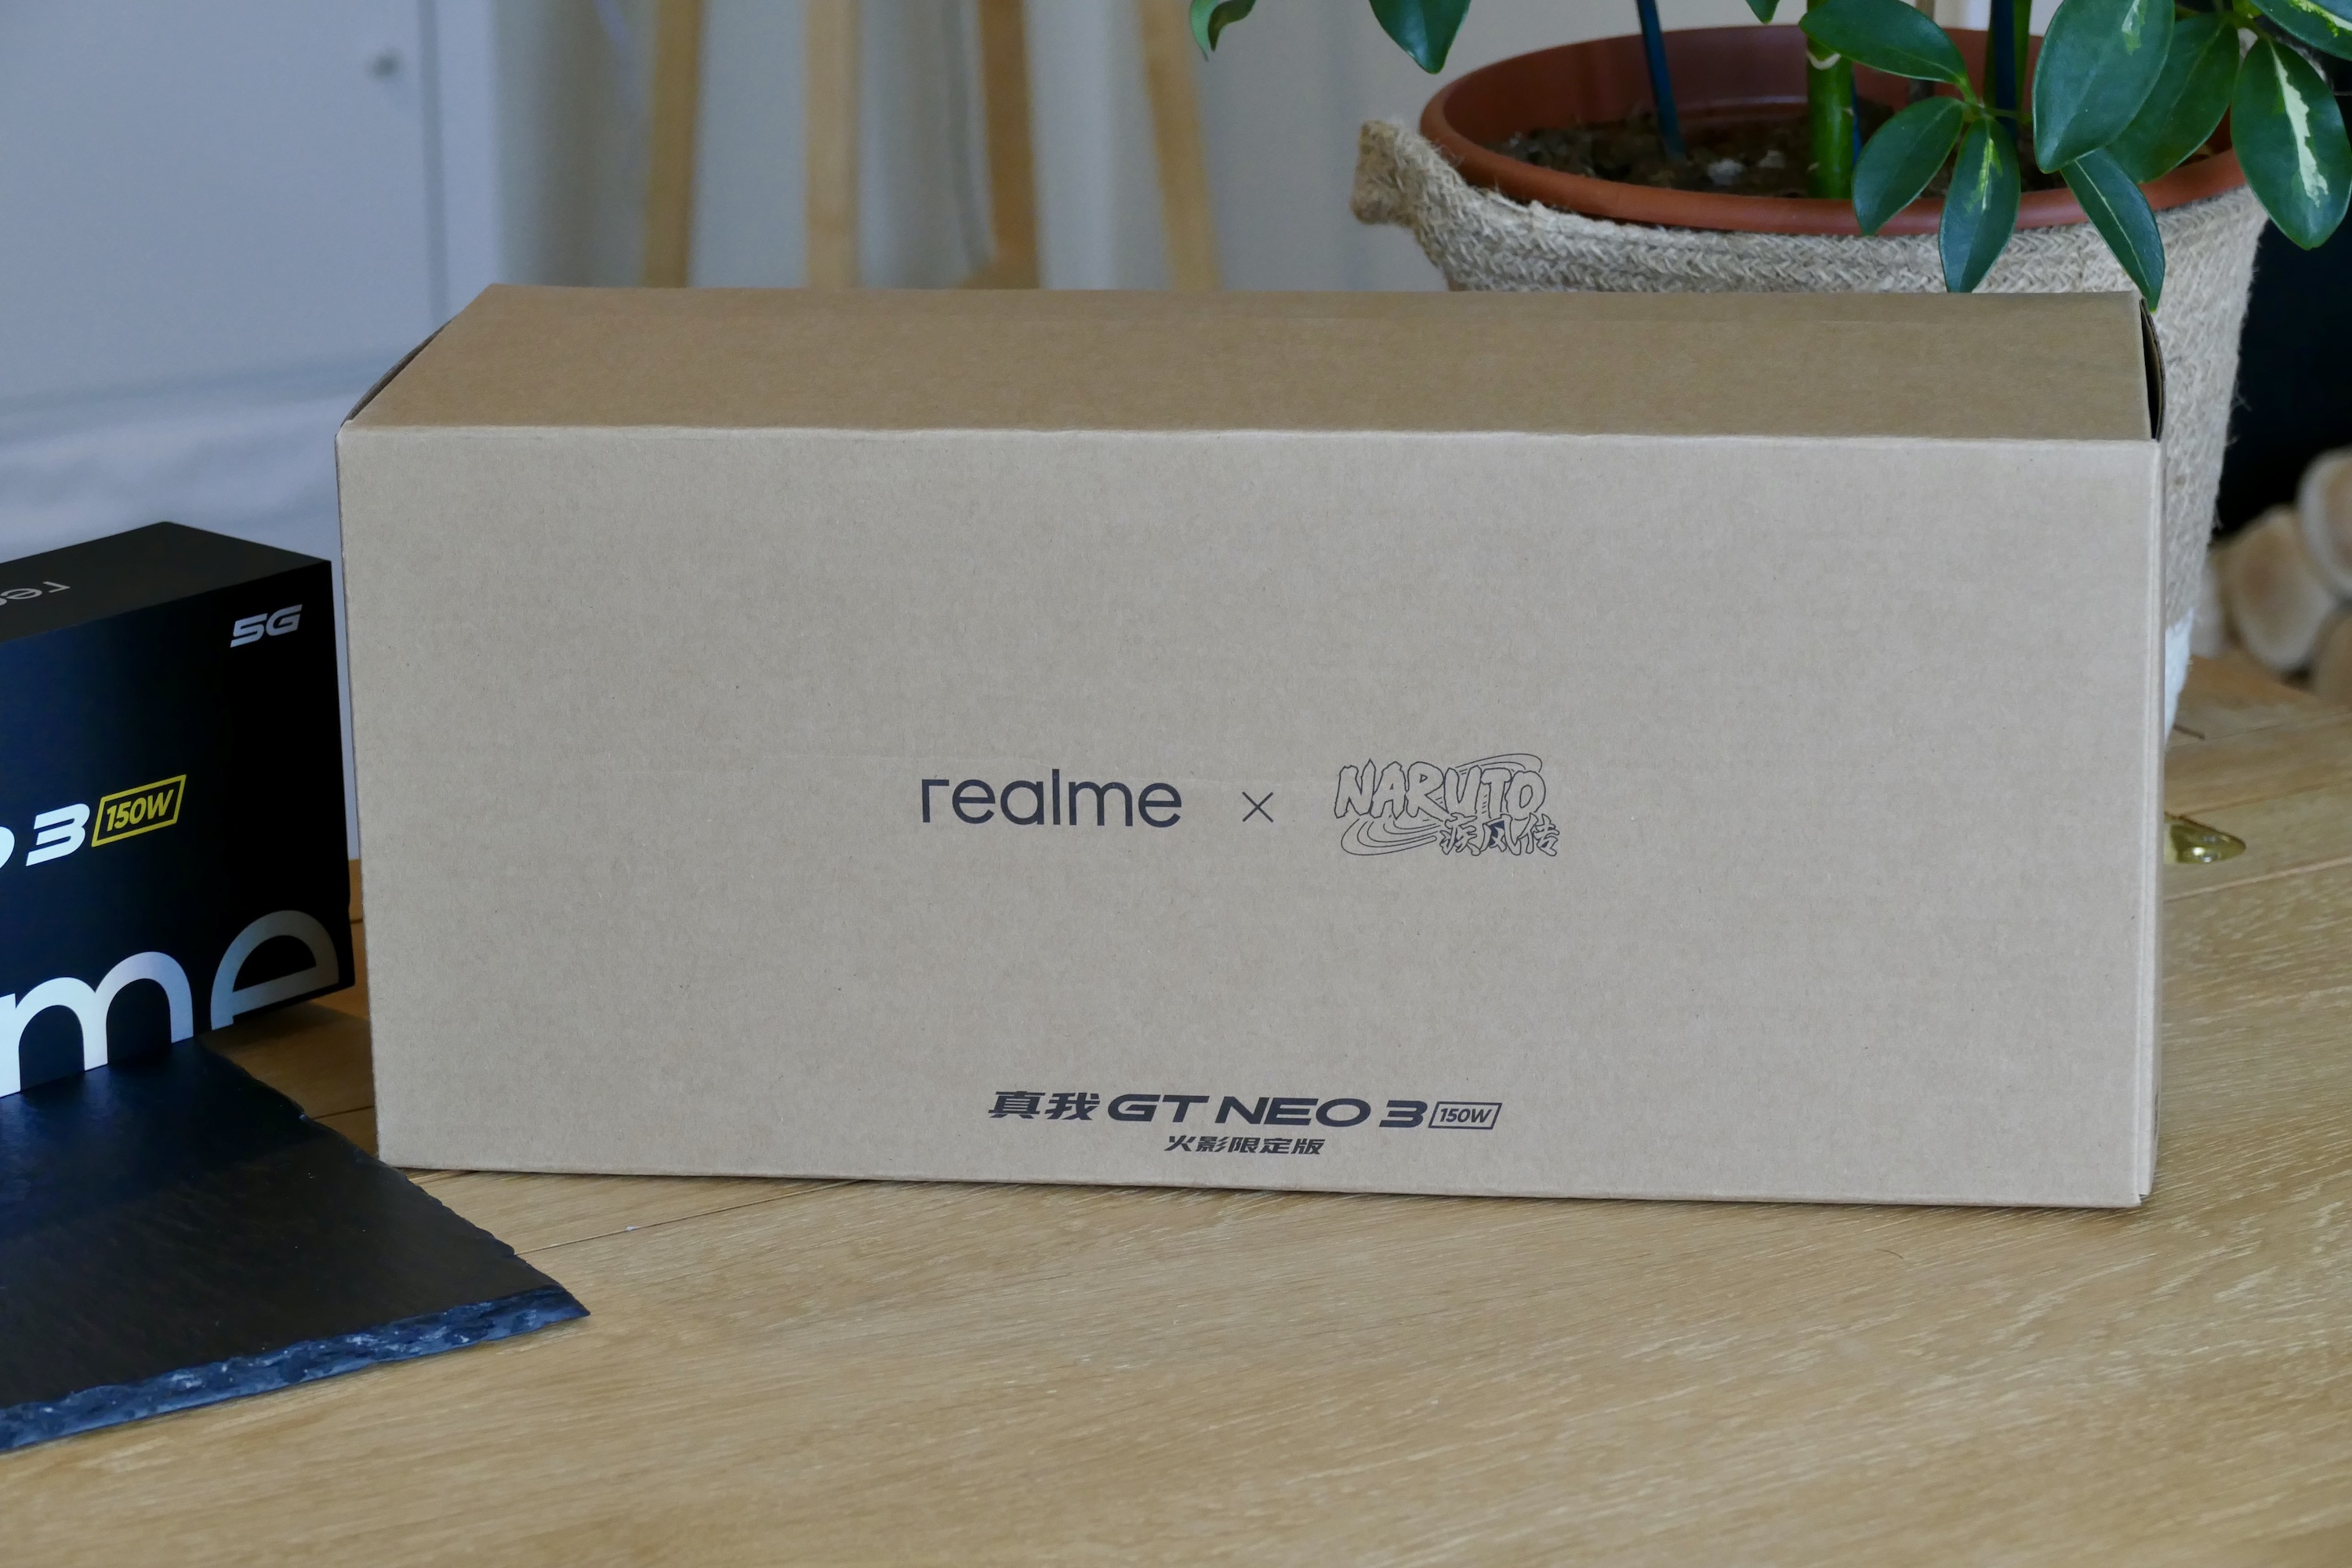 Realme x Naruto GT Neo 3 box.